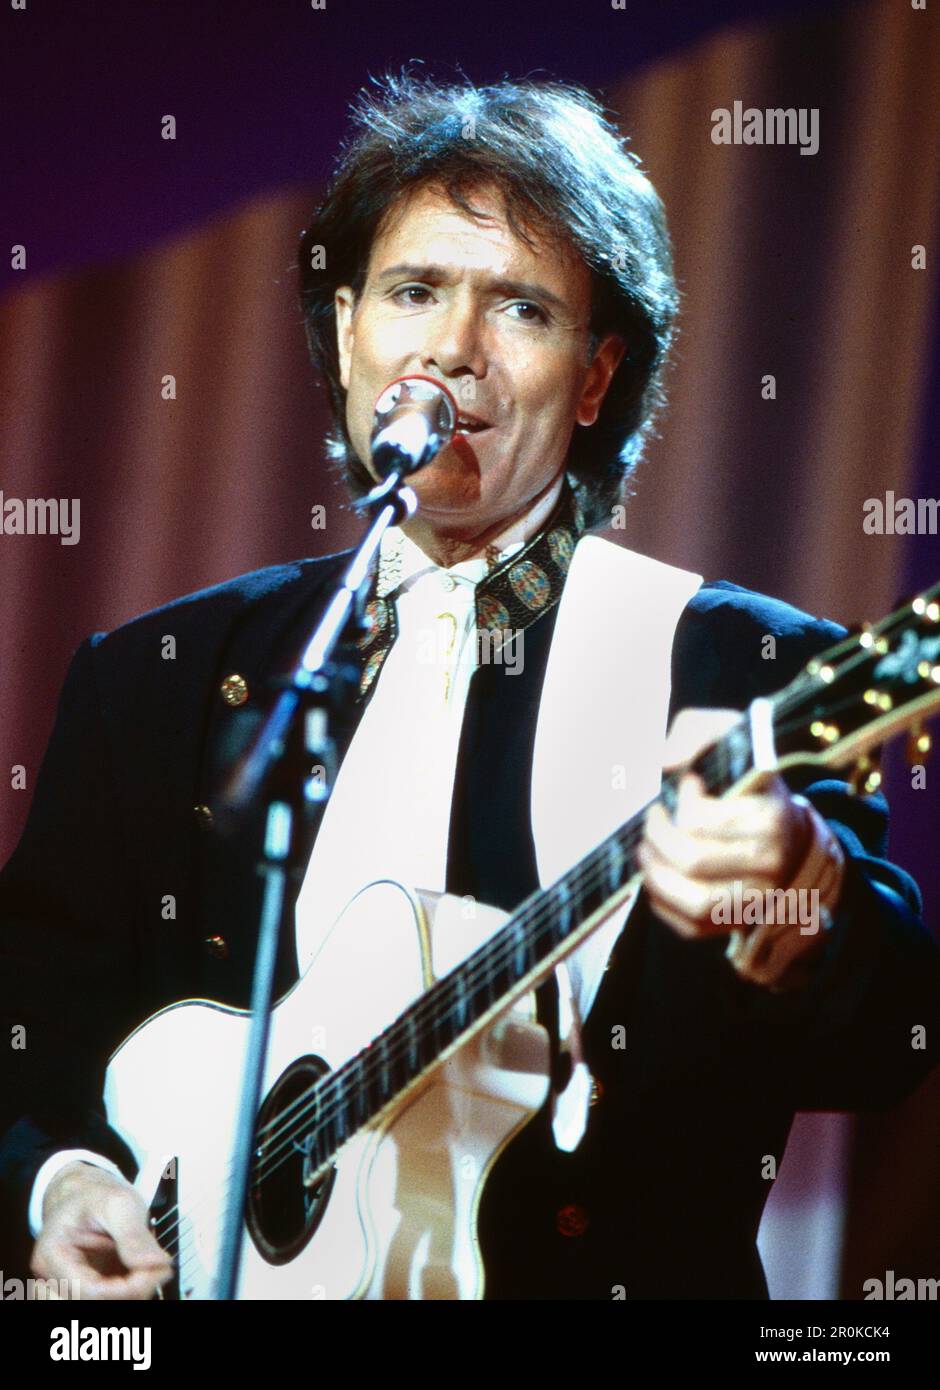 Sir Cliff Richard, britischer Popsänger, bei einem Auftritt, Deutschland um 1996. Stock Photo